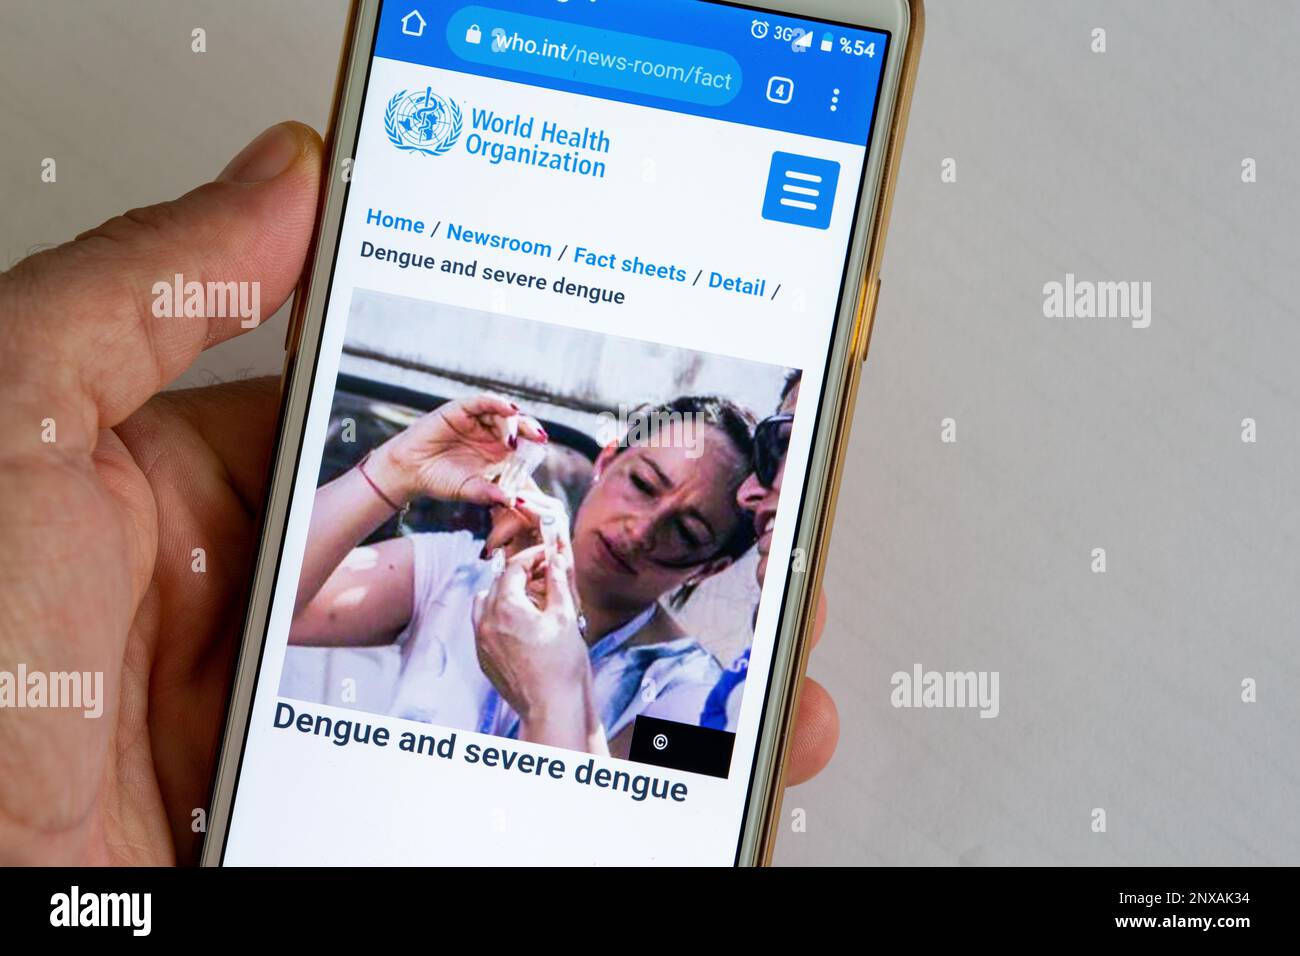 Una mano sta tenendo un telefono cellulare. Il sito dell'Organizzazione Mondiale della Sanità (OMS) è aperto sul telefono cellulare. Immagine di Dengue e dengue grave. Foto Stock